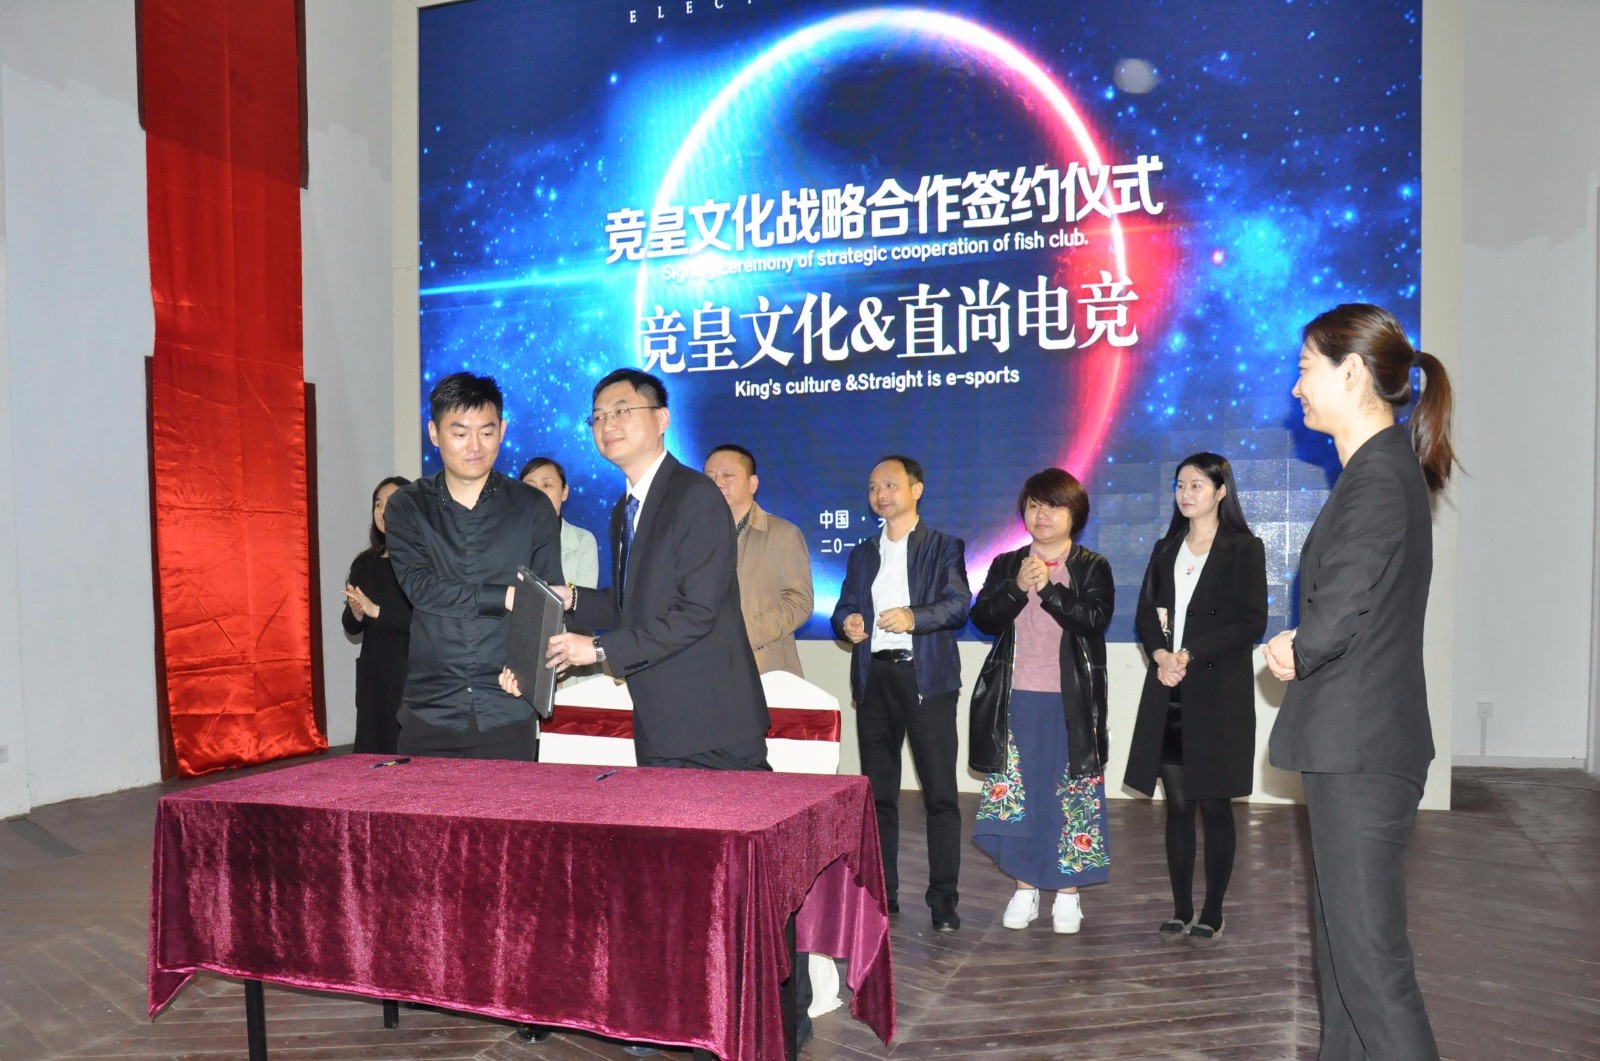 中国首个电竞留学项目来了 还是双学士学位加